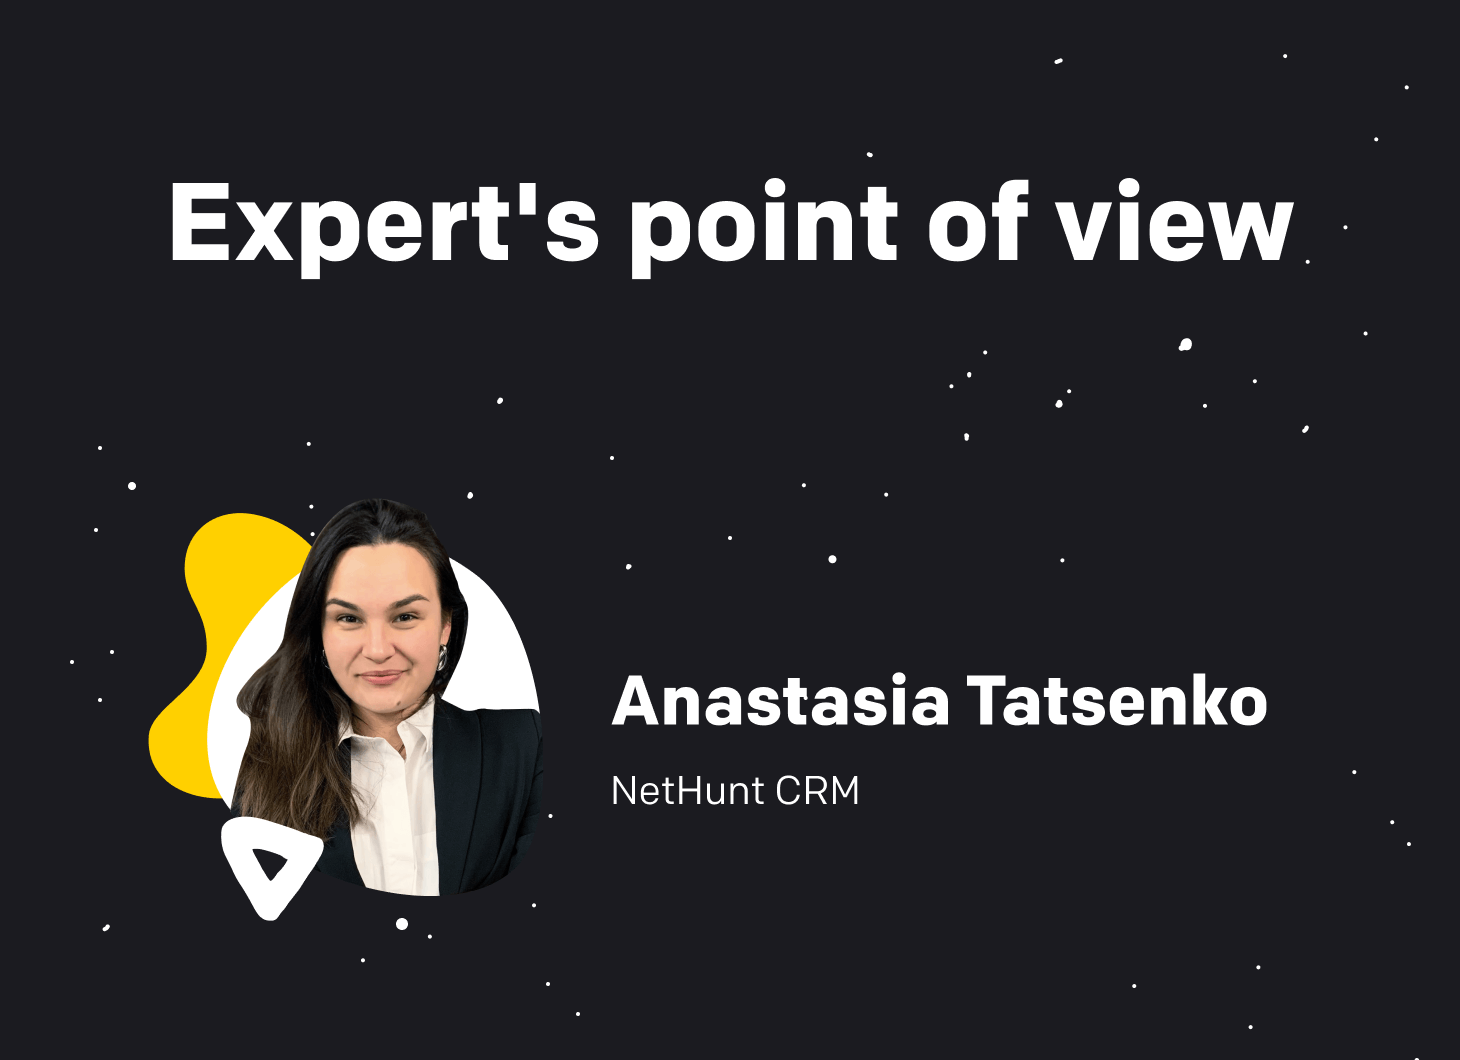 Anastasia Tatsenko from NetHunt CRM.